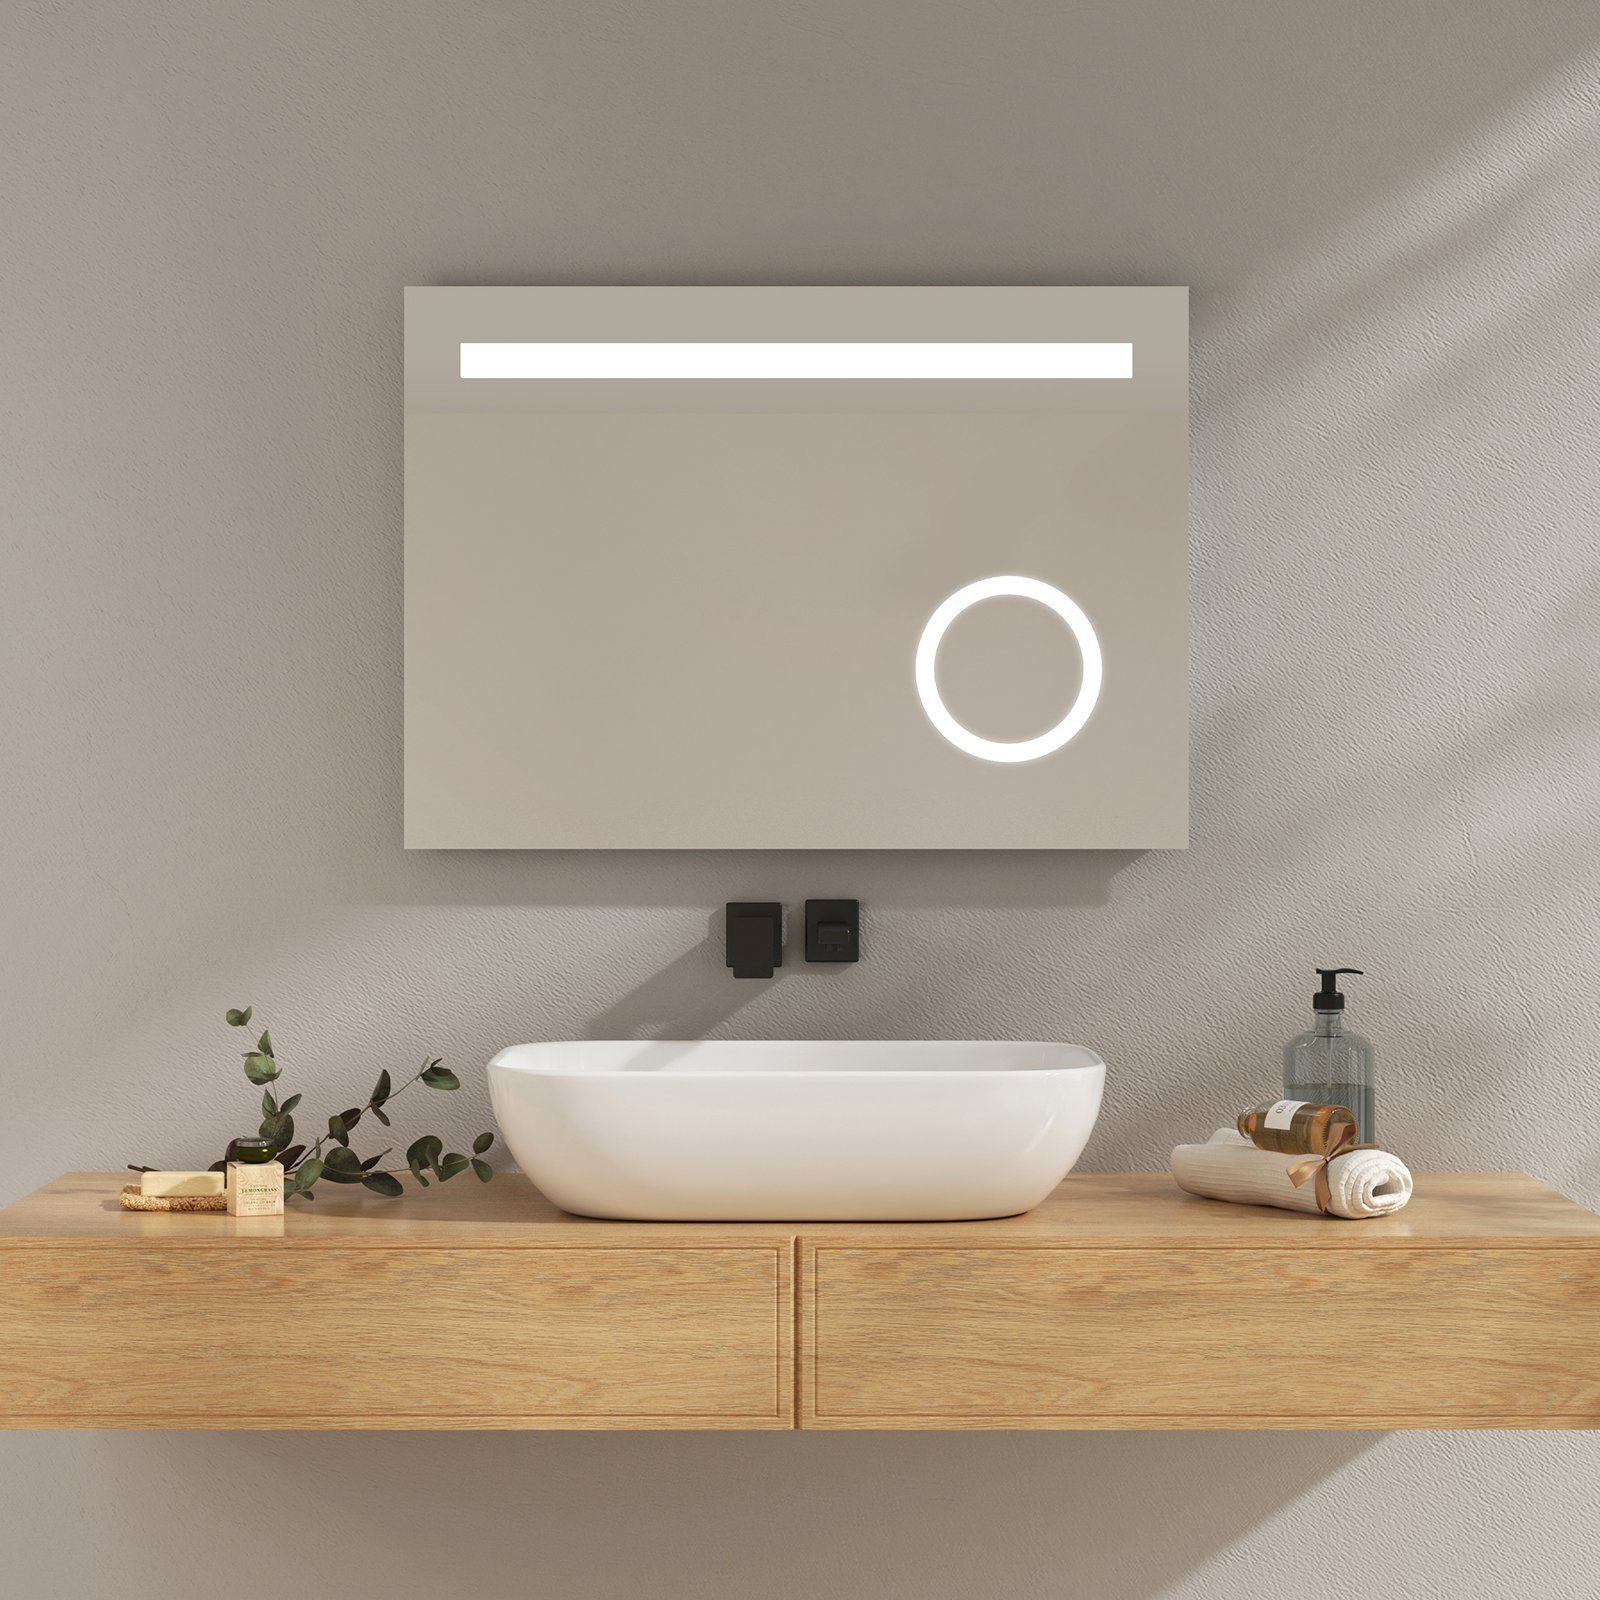 EMKE Badspiegel EMKE LED Badezimmerspiegel mit Beleuchtung LED Wandspiegel,  mit Taste und Beschlagfrei, 2 Lichtfarbe Warmweiß/Kaltweiß